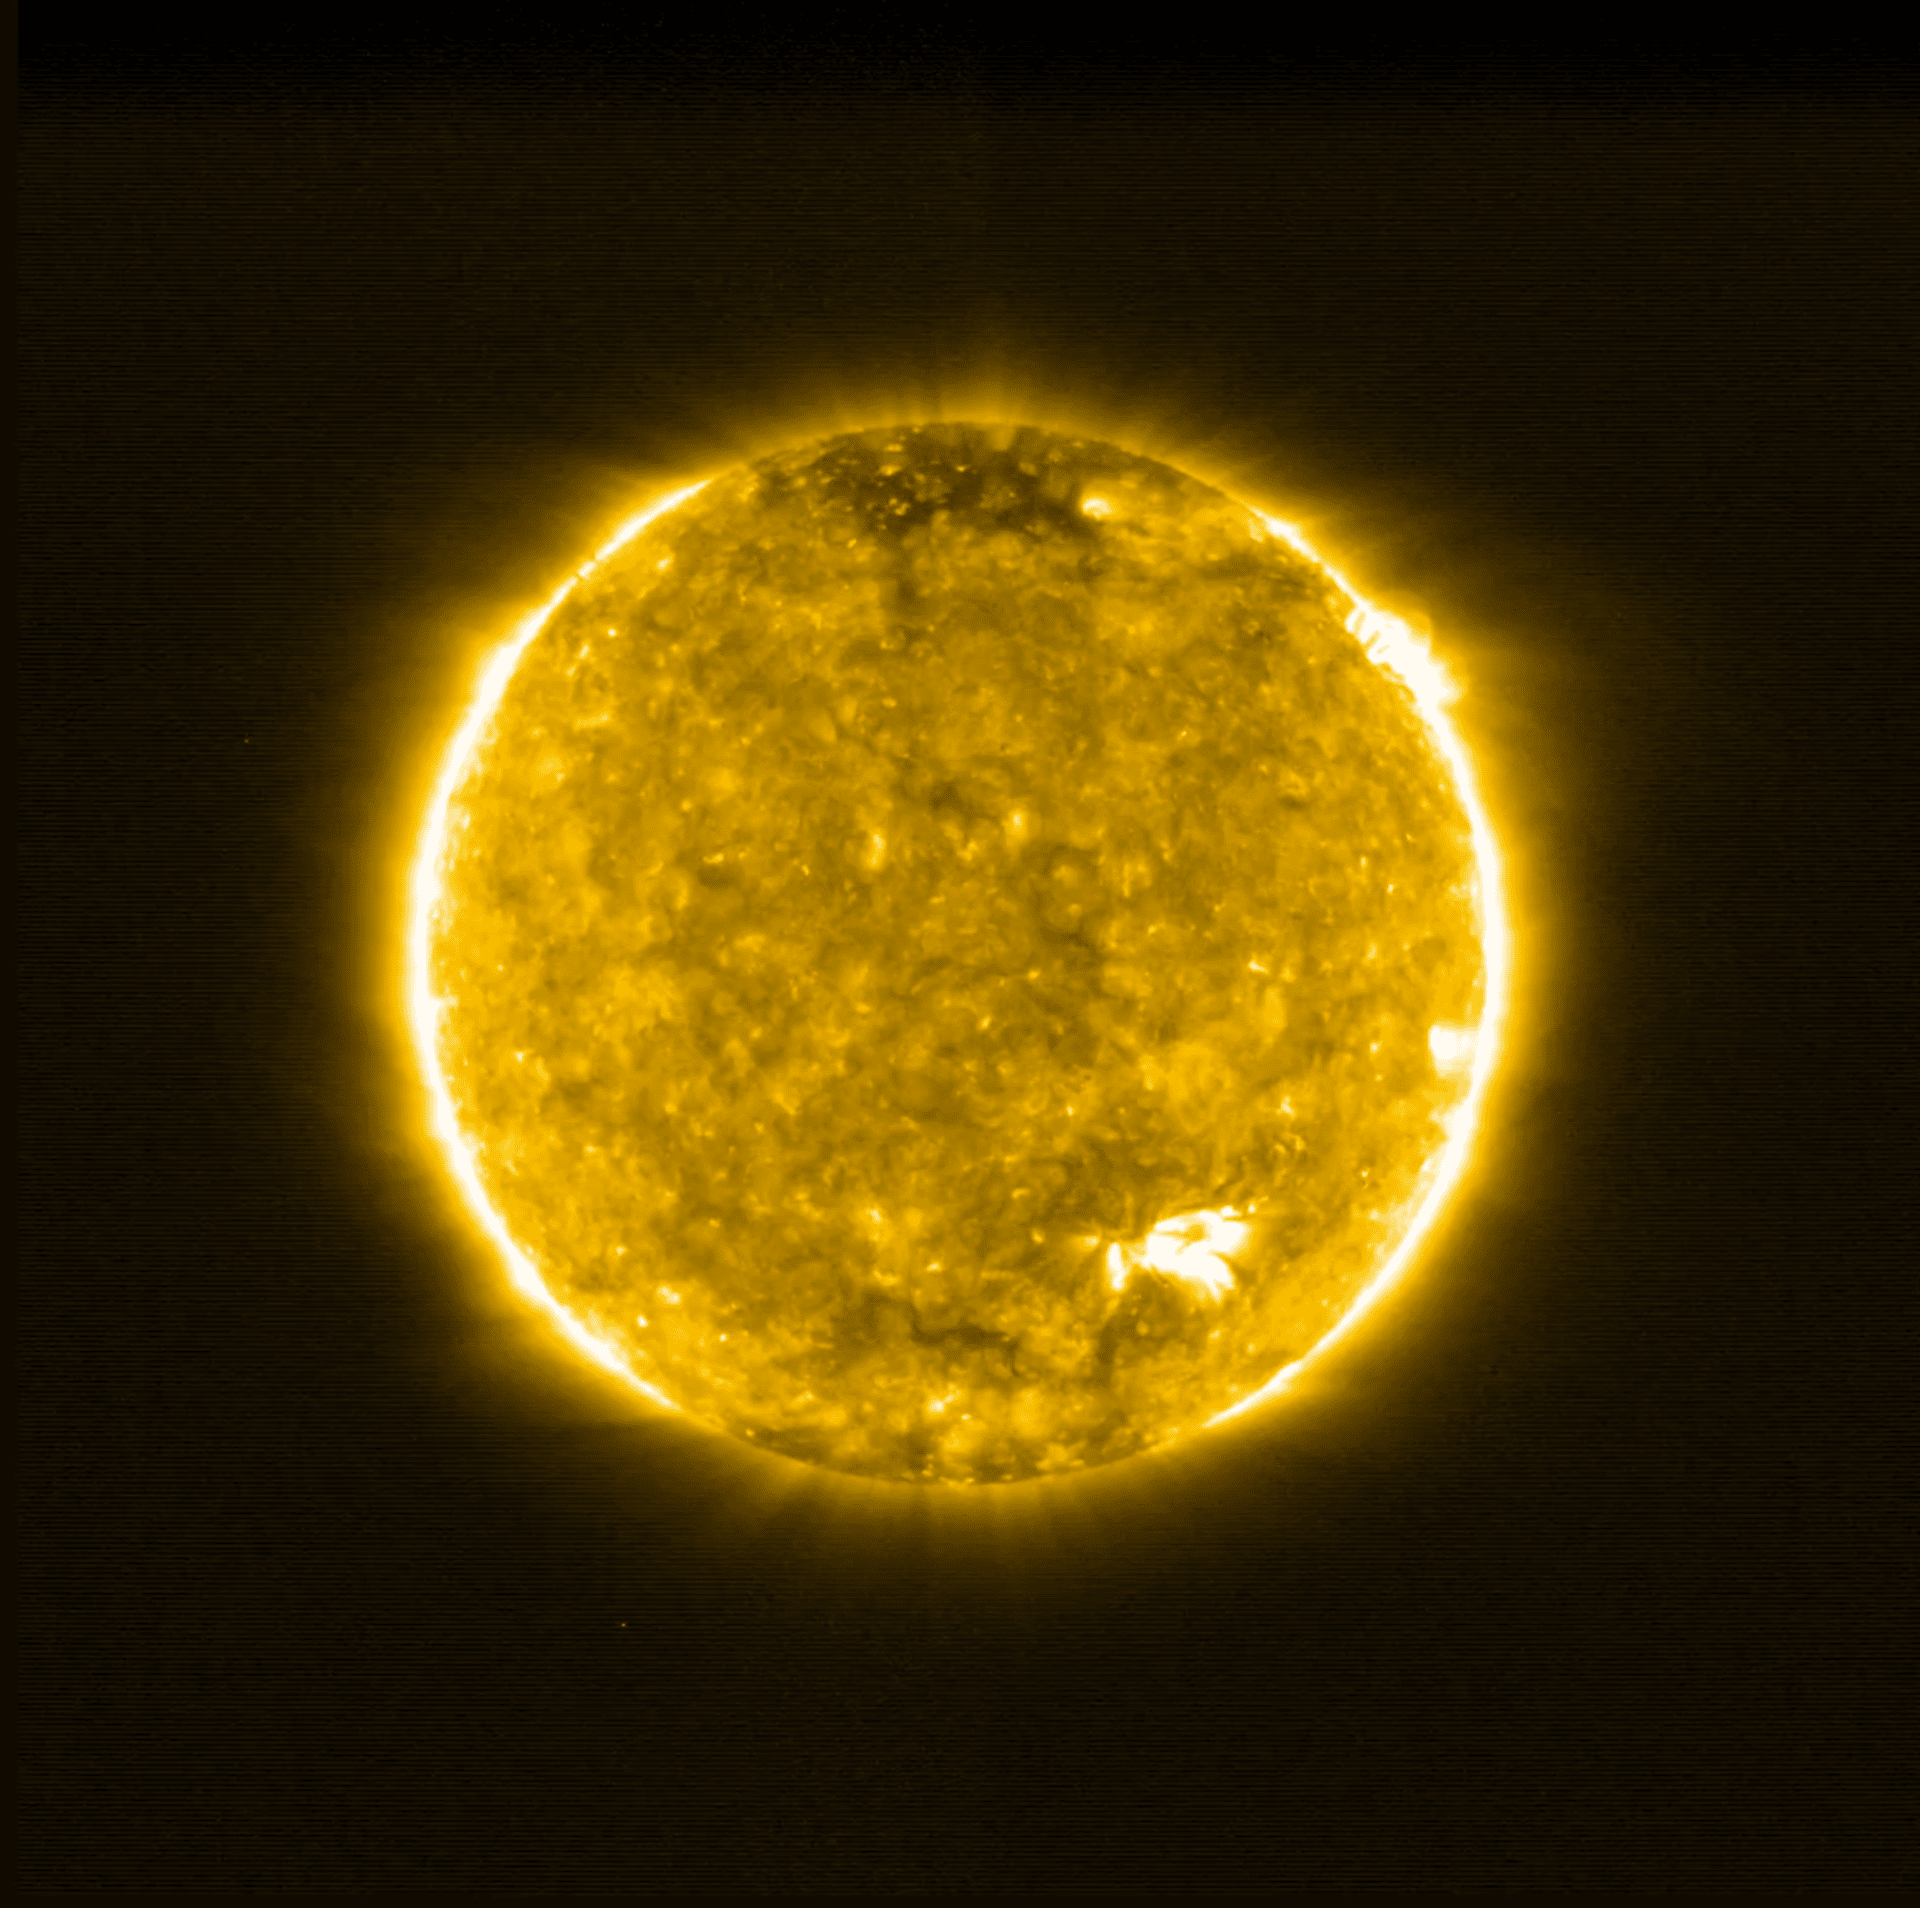 Снимки солнца аппарата Solar Orbiter